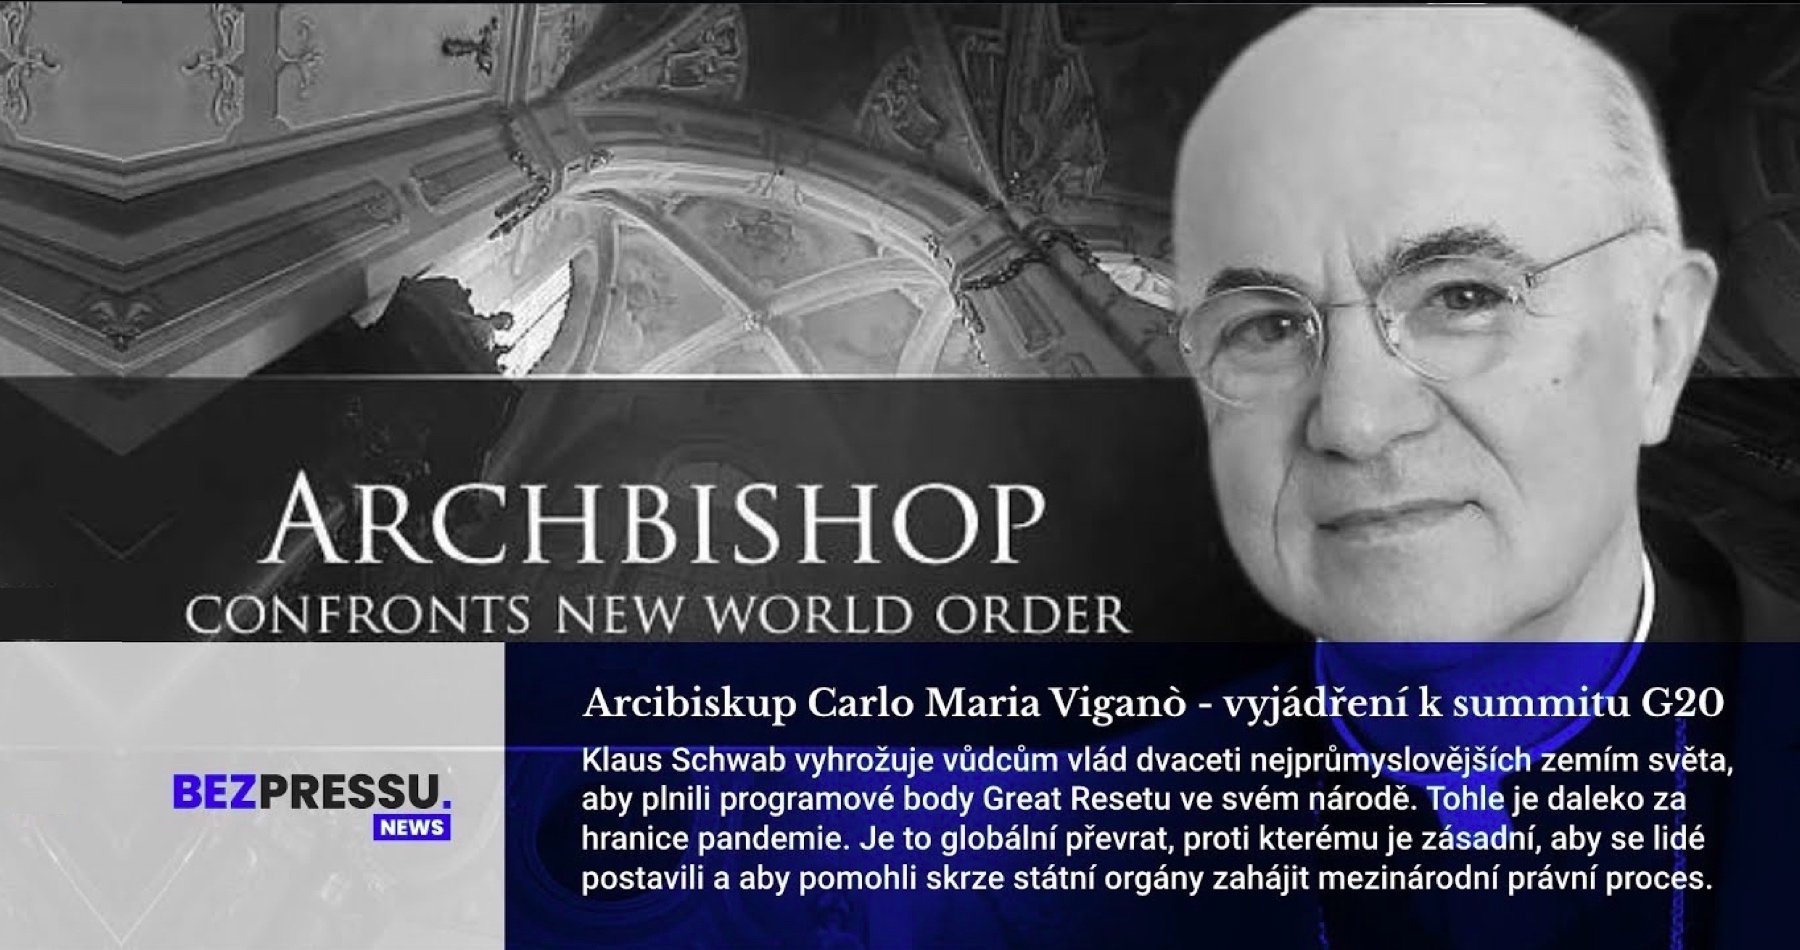 VIDEO: Závažné vyhlásenie arcibiskupa a vatikánskeho diplomata o vážnej a bezprostrednej hrozbe, ktorej ľudstvo čelí v boji proti globálnemu zločineckému Syndikátu: Carlo Maria Viganò informoval, že šéf WEF Klaus Schwab na summite G20 inštruoval hlavy štátov, ako v rámci agendy Veľkého resetu pre nastolenie totalitnej svetovlády postupovať v snahe zotročiť národy bez poverenia ľudu a podriadiť ich globalistom: „Je to globálny prevrat. Ľudia musia povstať a cez štátne orgány odštartovať proti nim medzinárodný súdny proces“